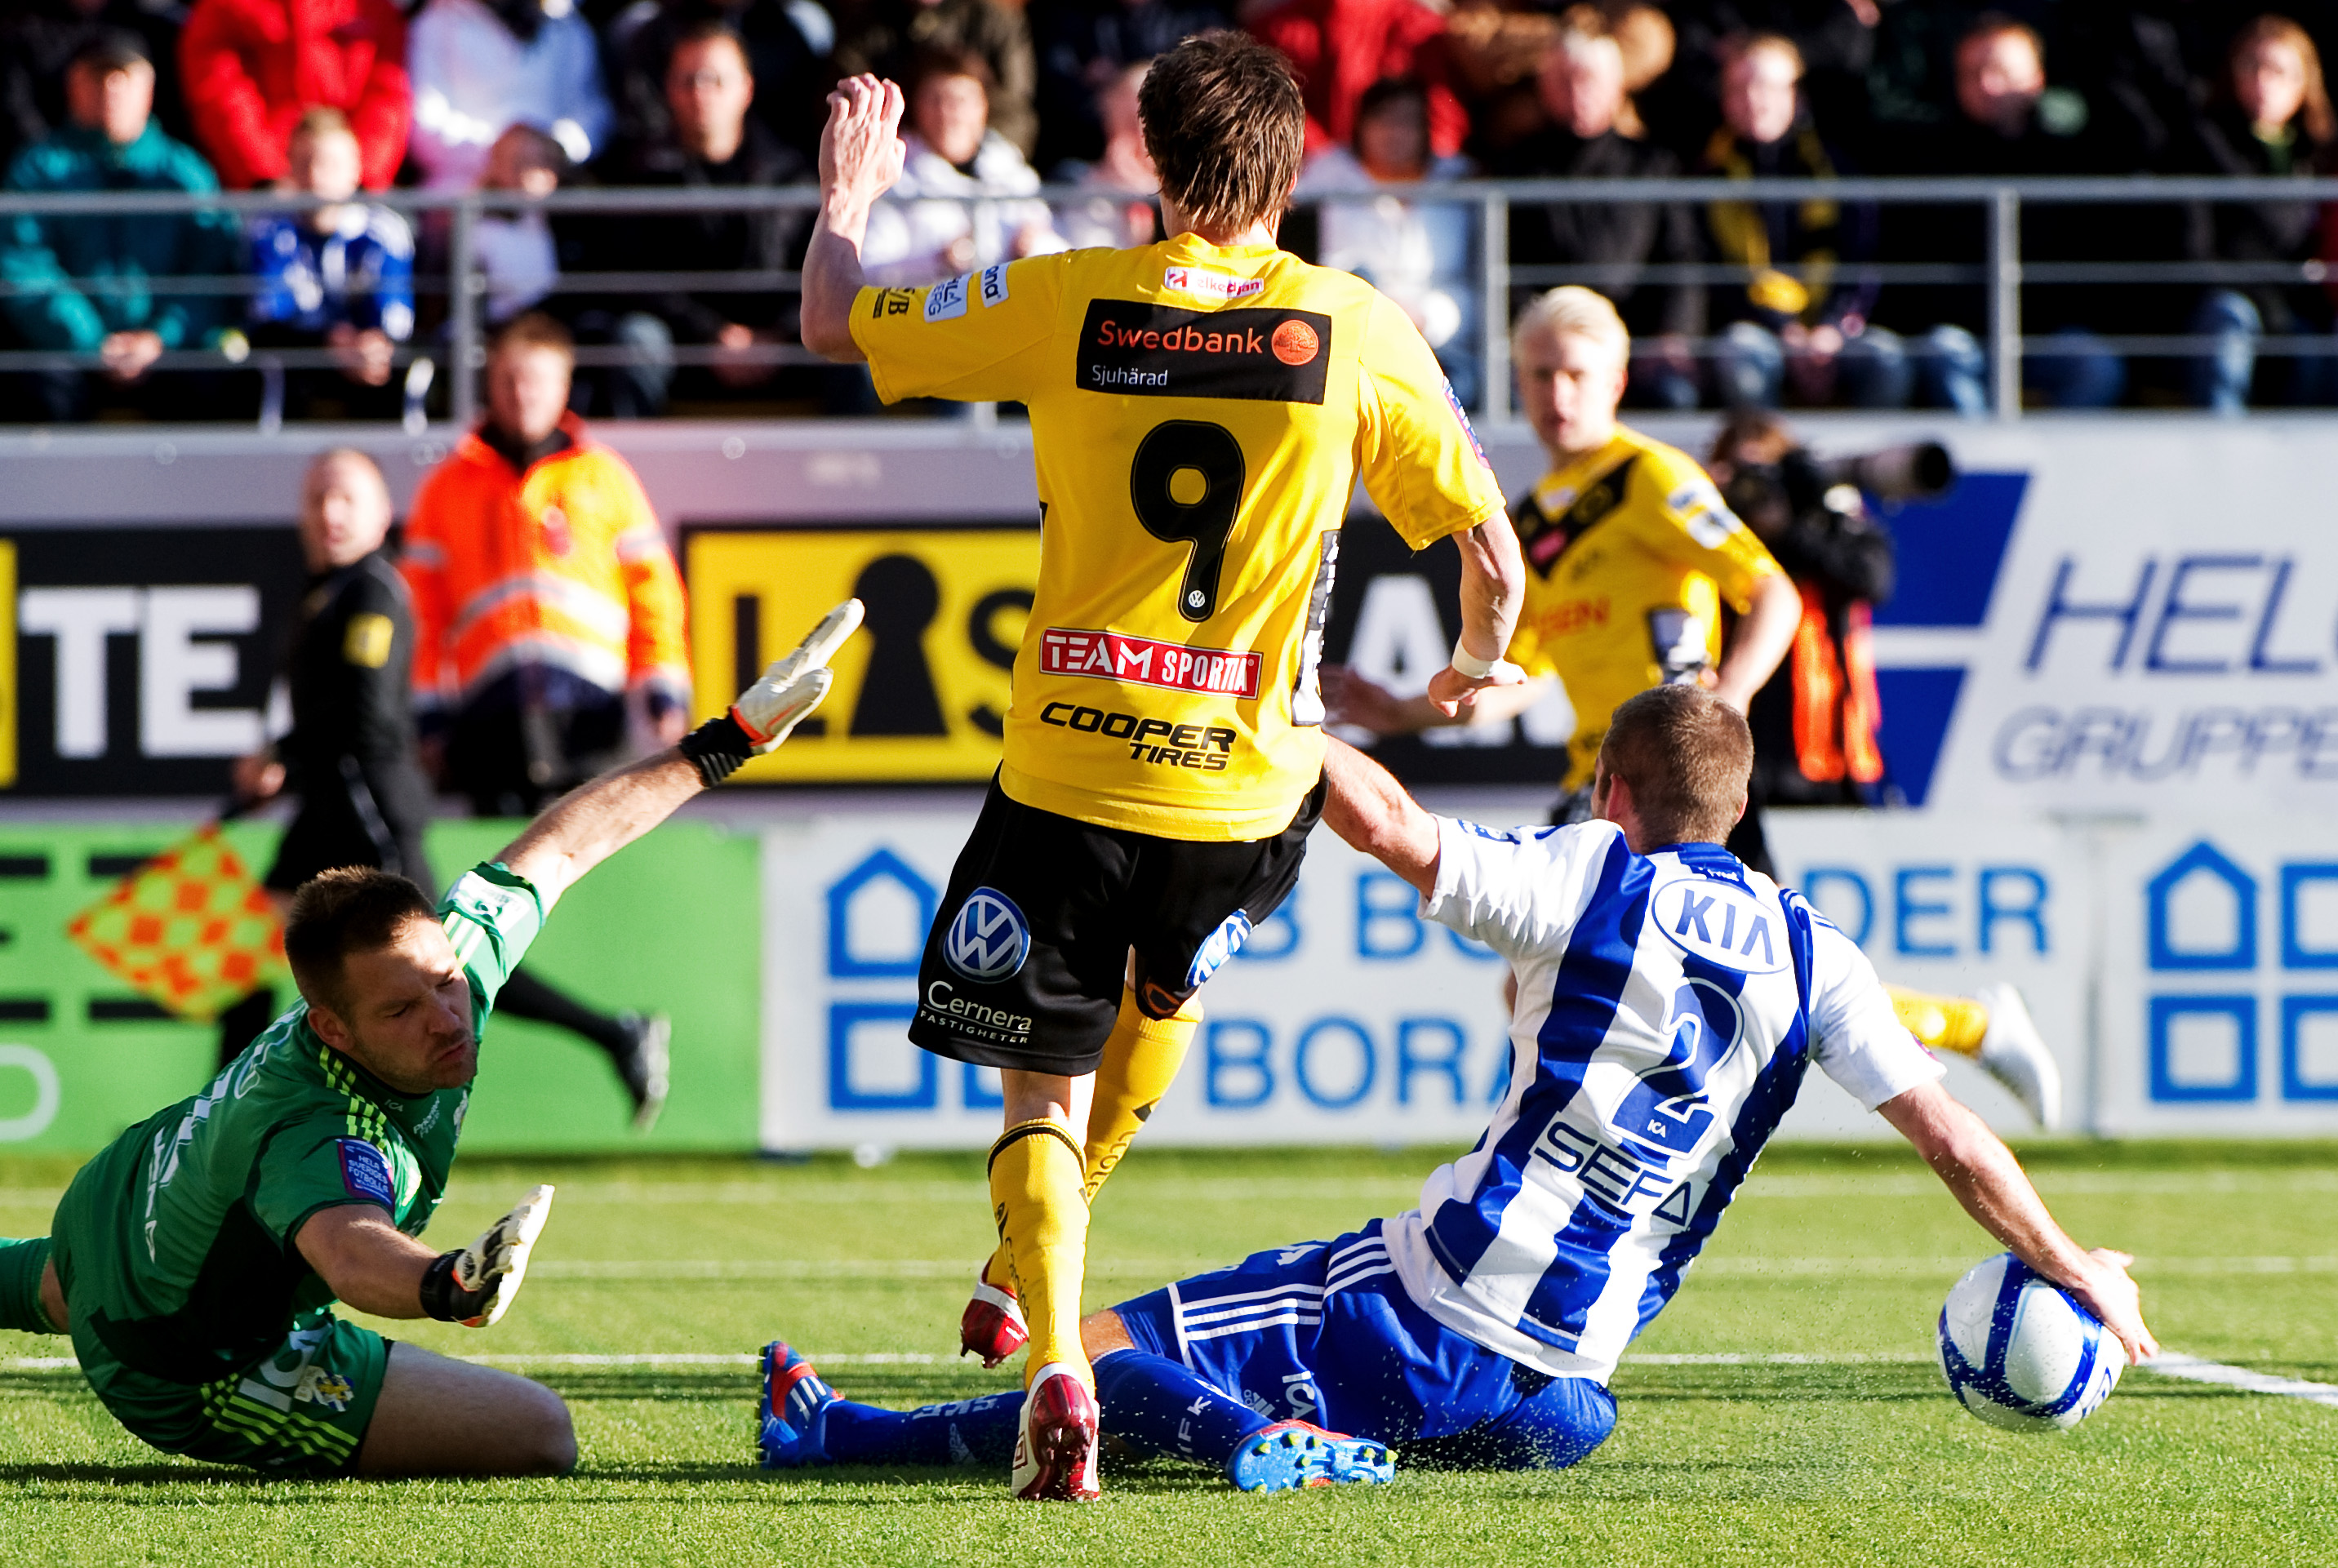 Fotboll, Allsvenskan, IF Elfsborg, ifk goteborg, Lasse Nilsson